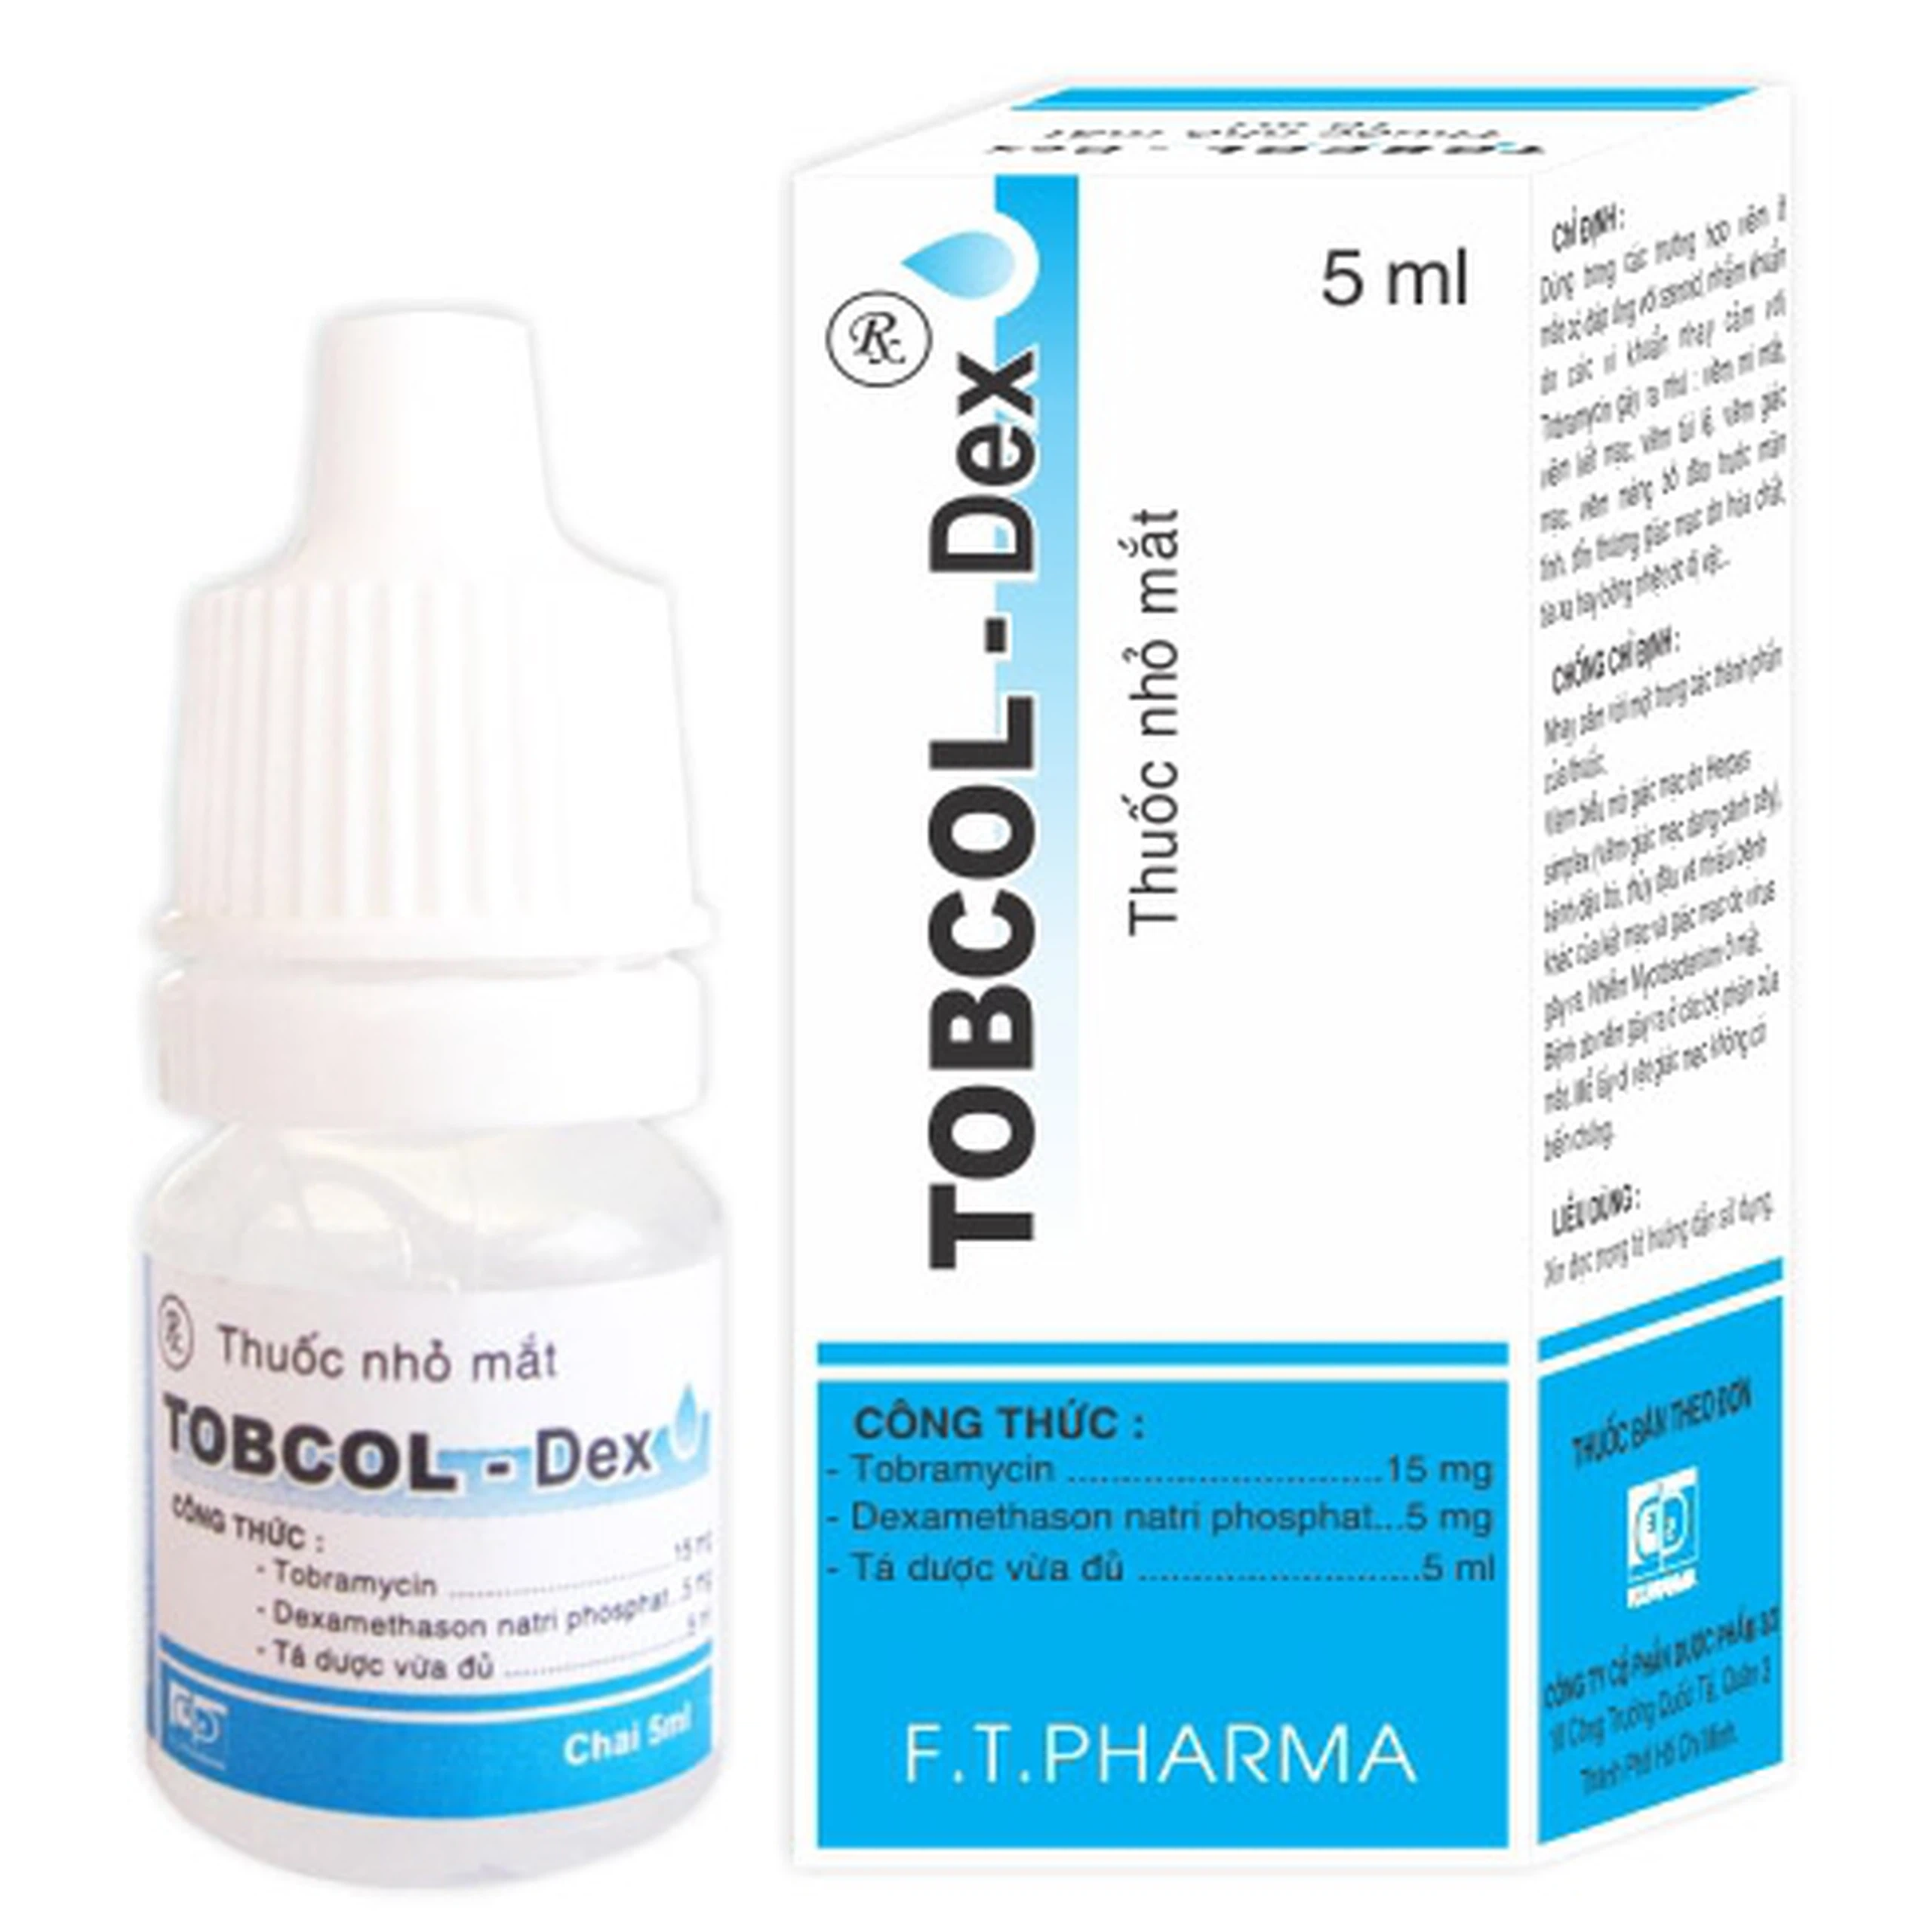 Thuốc nhỏ mắt Tobcol-Dex Dược 3-2 điều trị Viêm mi mắt, viêm kết mạc (5ml)